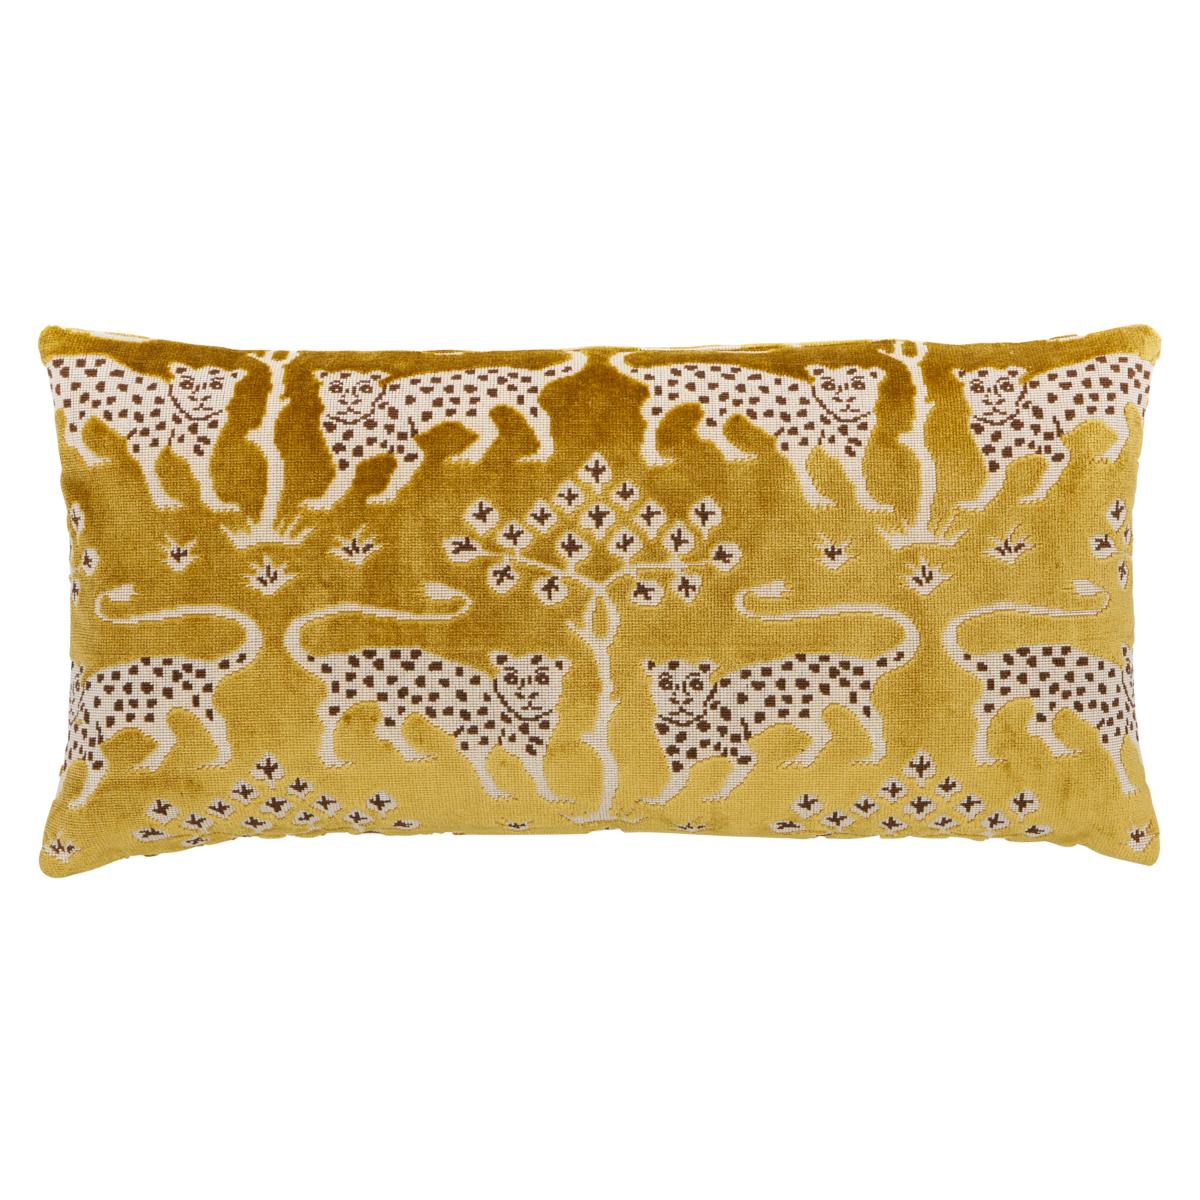 Shumacher Woodland Leopard Velvet 24x12" Pillow in Gold For Sale